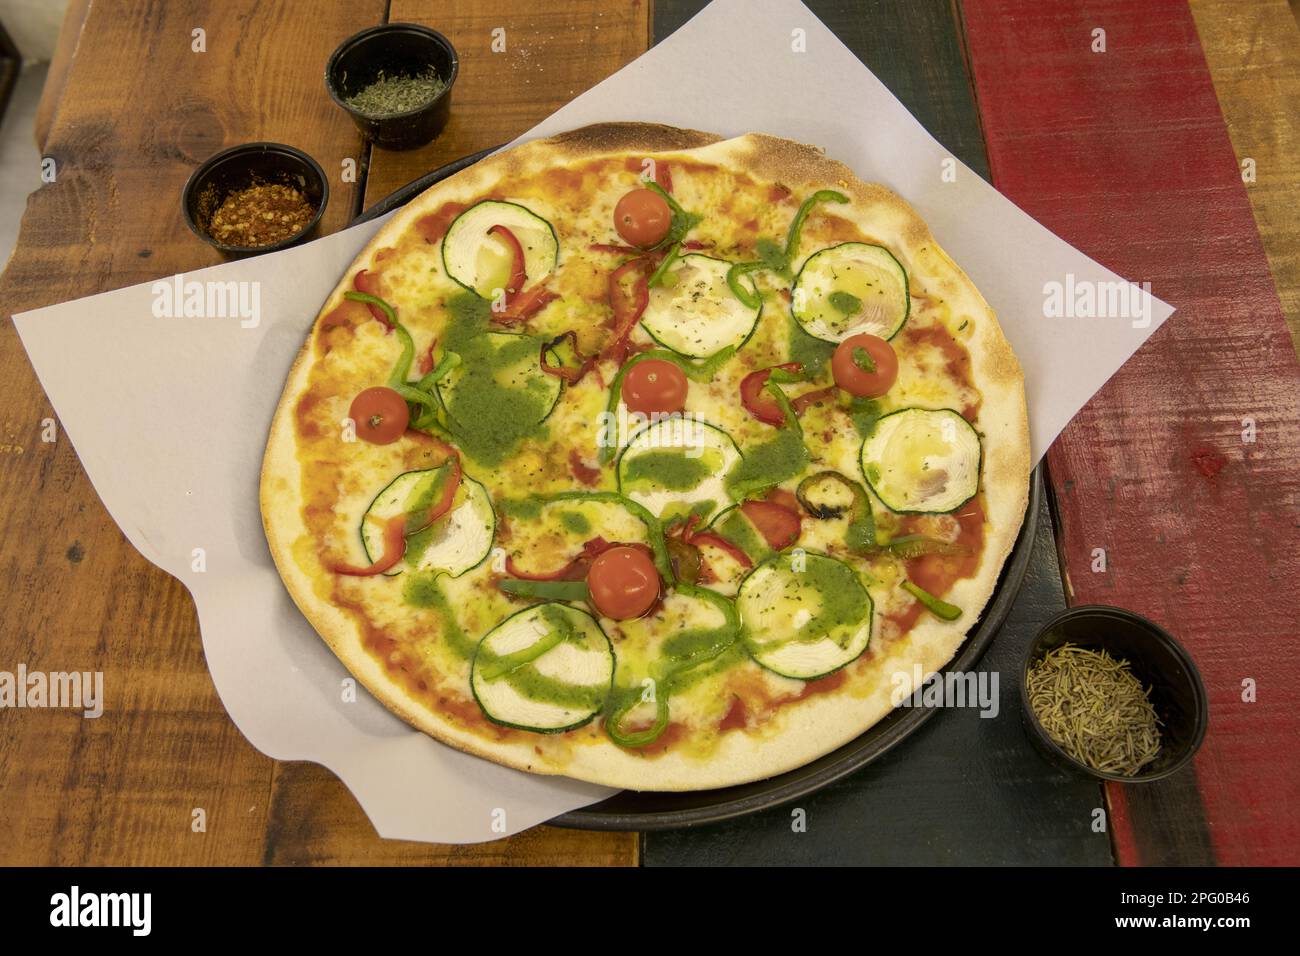 Une merveilleuse pizza à croûte mince moyenne avec différents types de légumes frais, tomates cerises, sauce au pesto et pomodoro sur une table en bois de couleur Banque D'Images